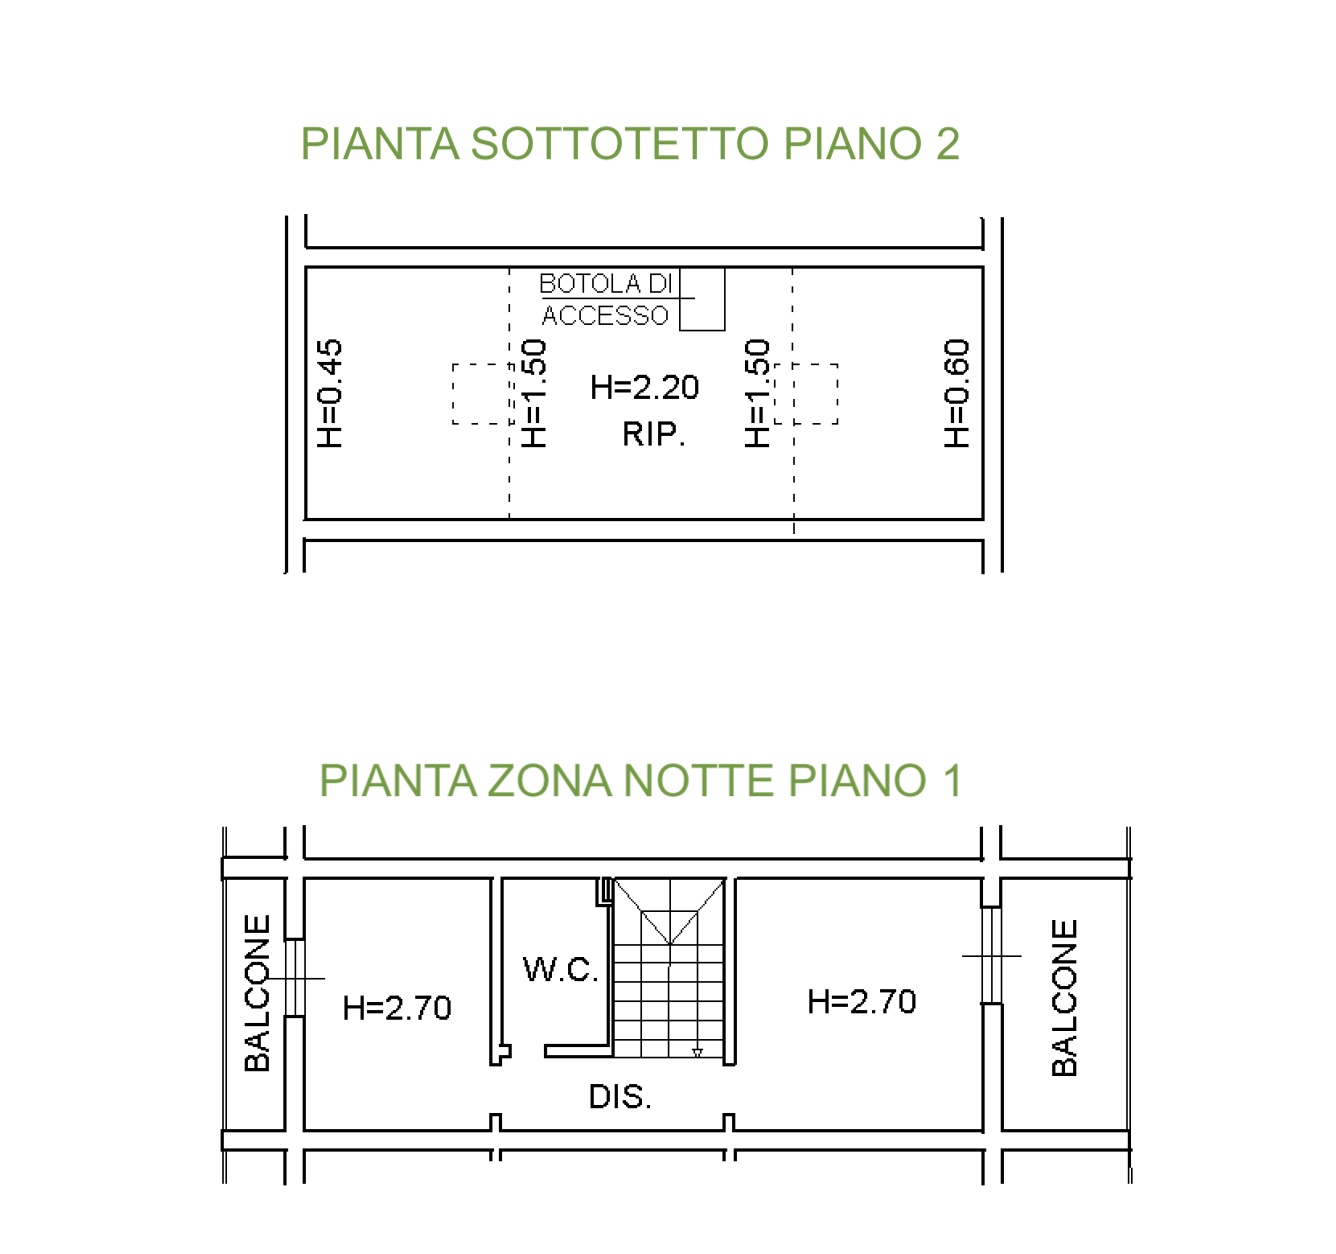 Guercio di Lerici – Duplex con terrazze, posto auto coperto e balconate